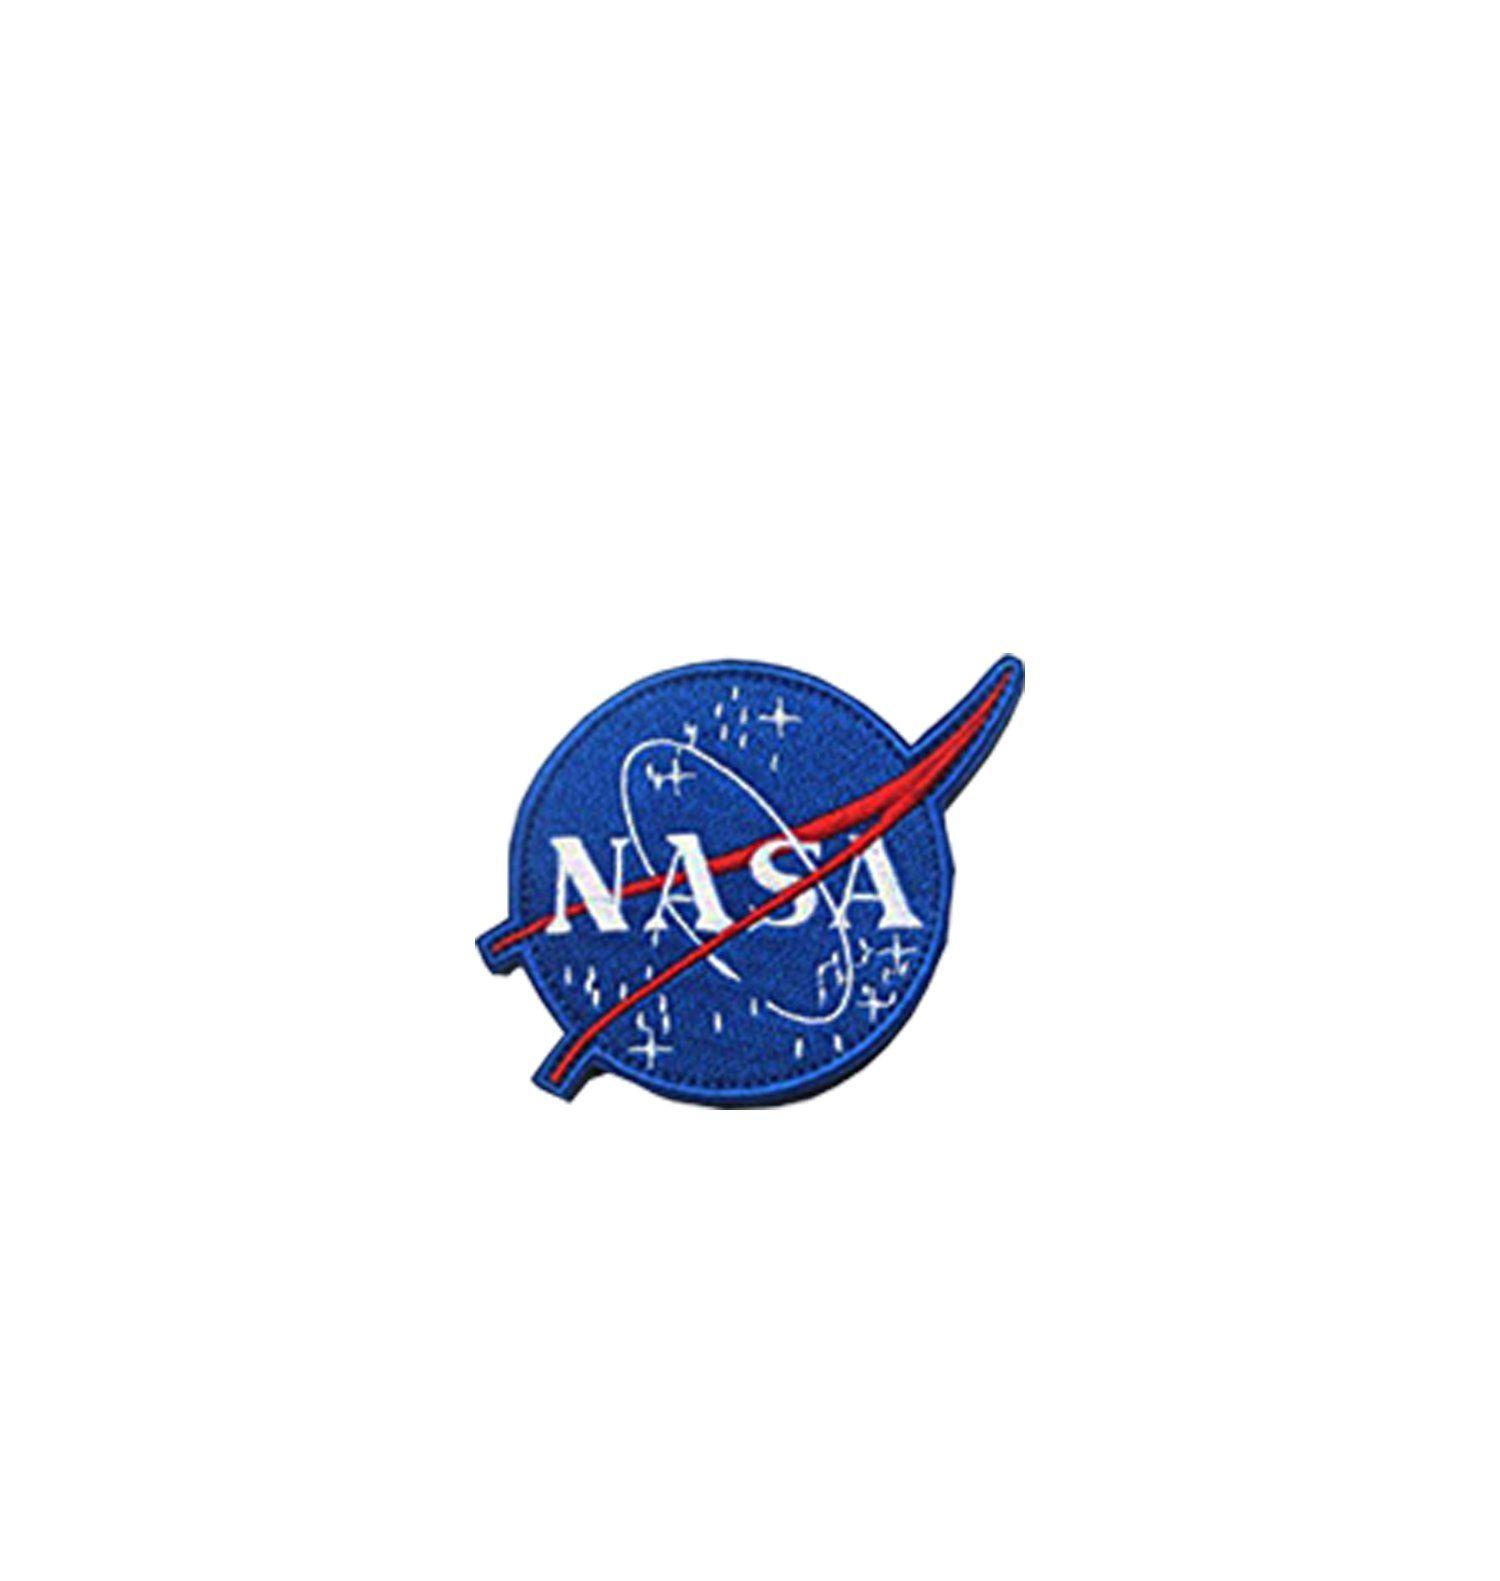 Official NASA Meatball Logo - PATCH MEATBALL LOGO